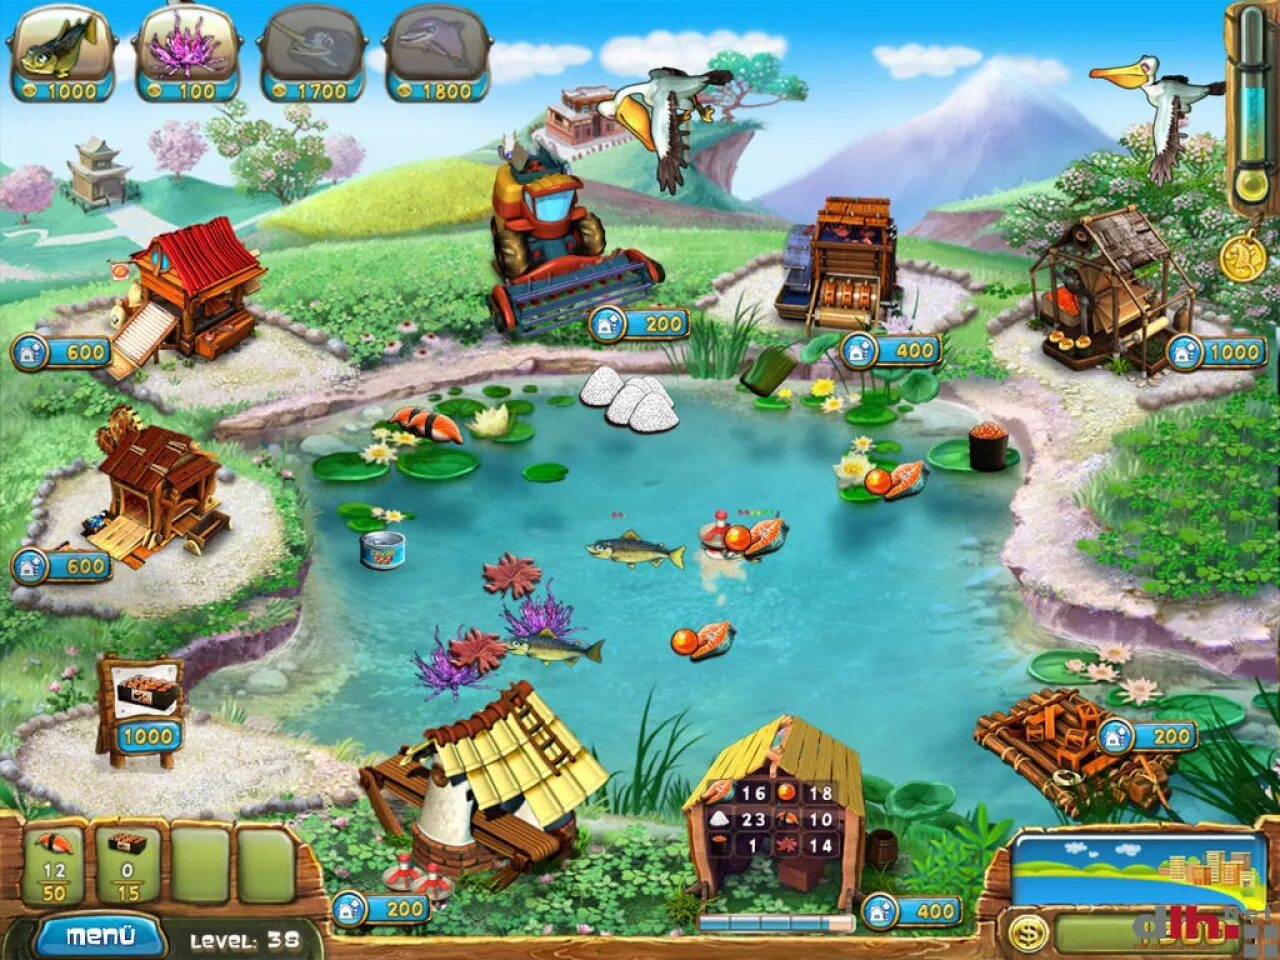 Fish Farm игра. Fish Farm 2 игра. Морская ферма игра. Fisher's Family Farm.